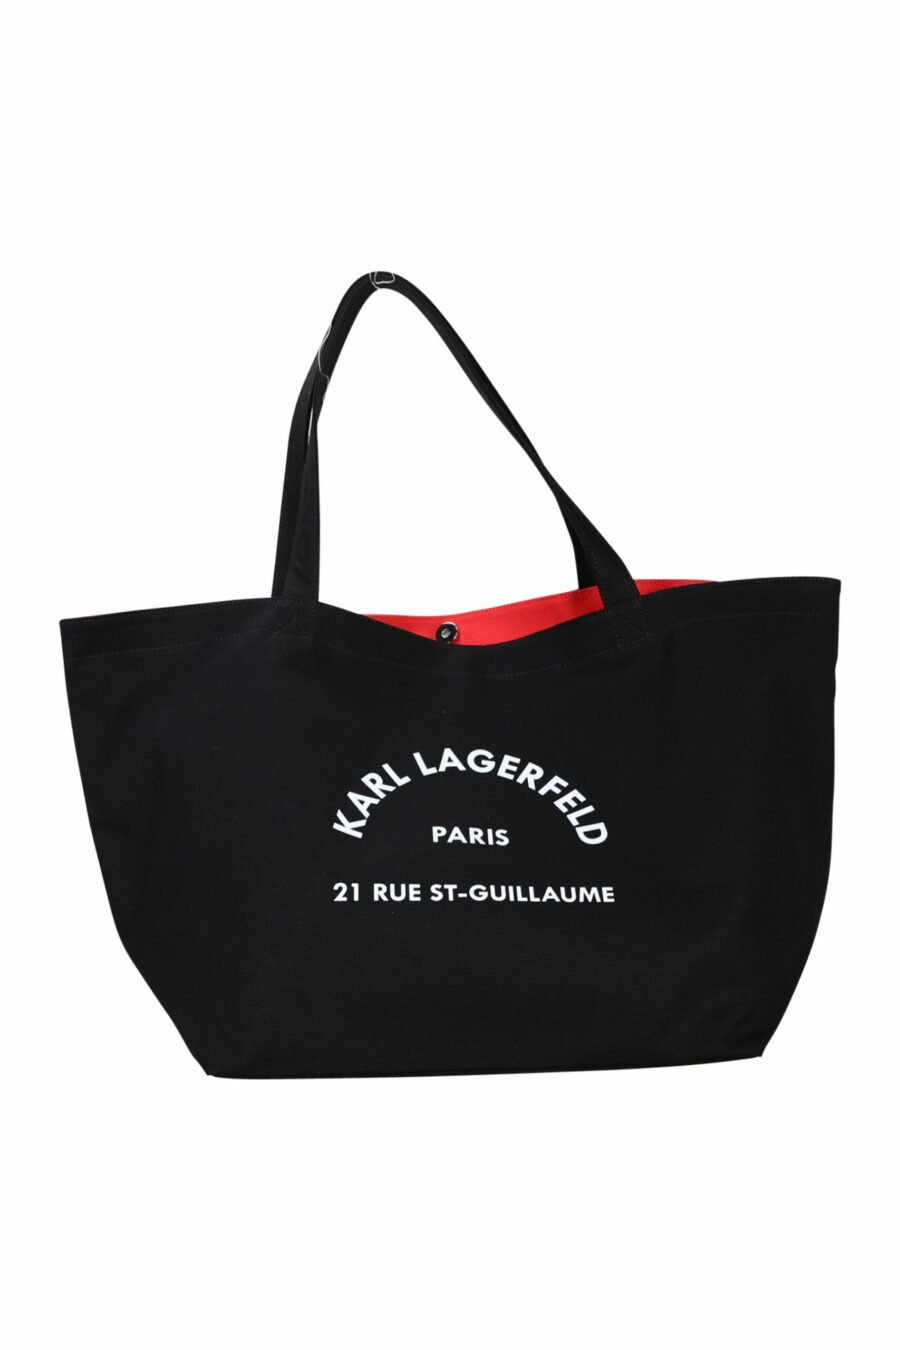 Tote bag negra con maxilogo "rue st guillaume" - 8720092106603 scaled